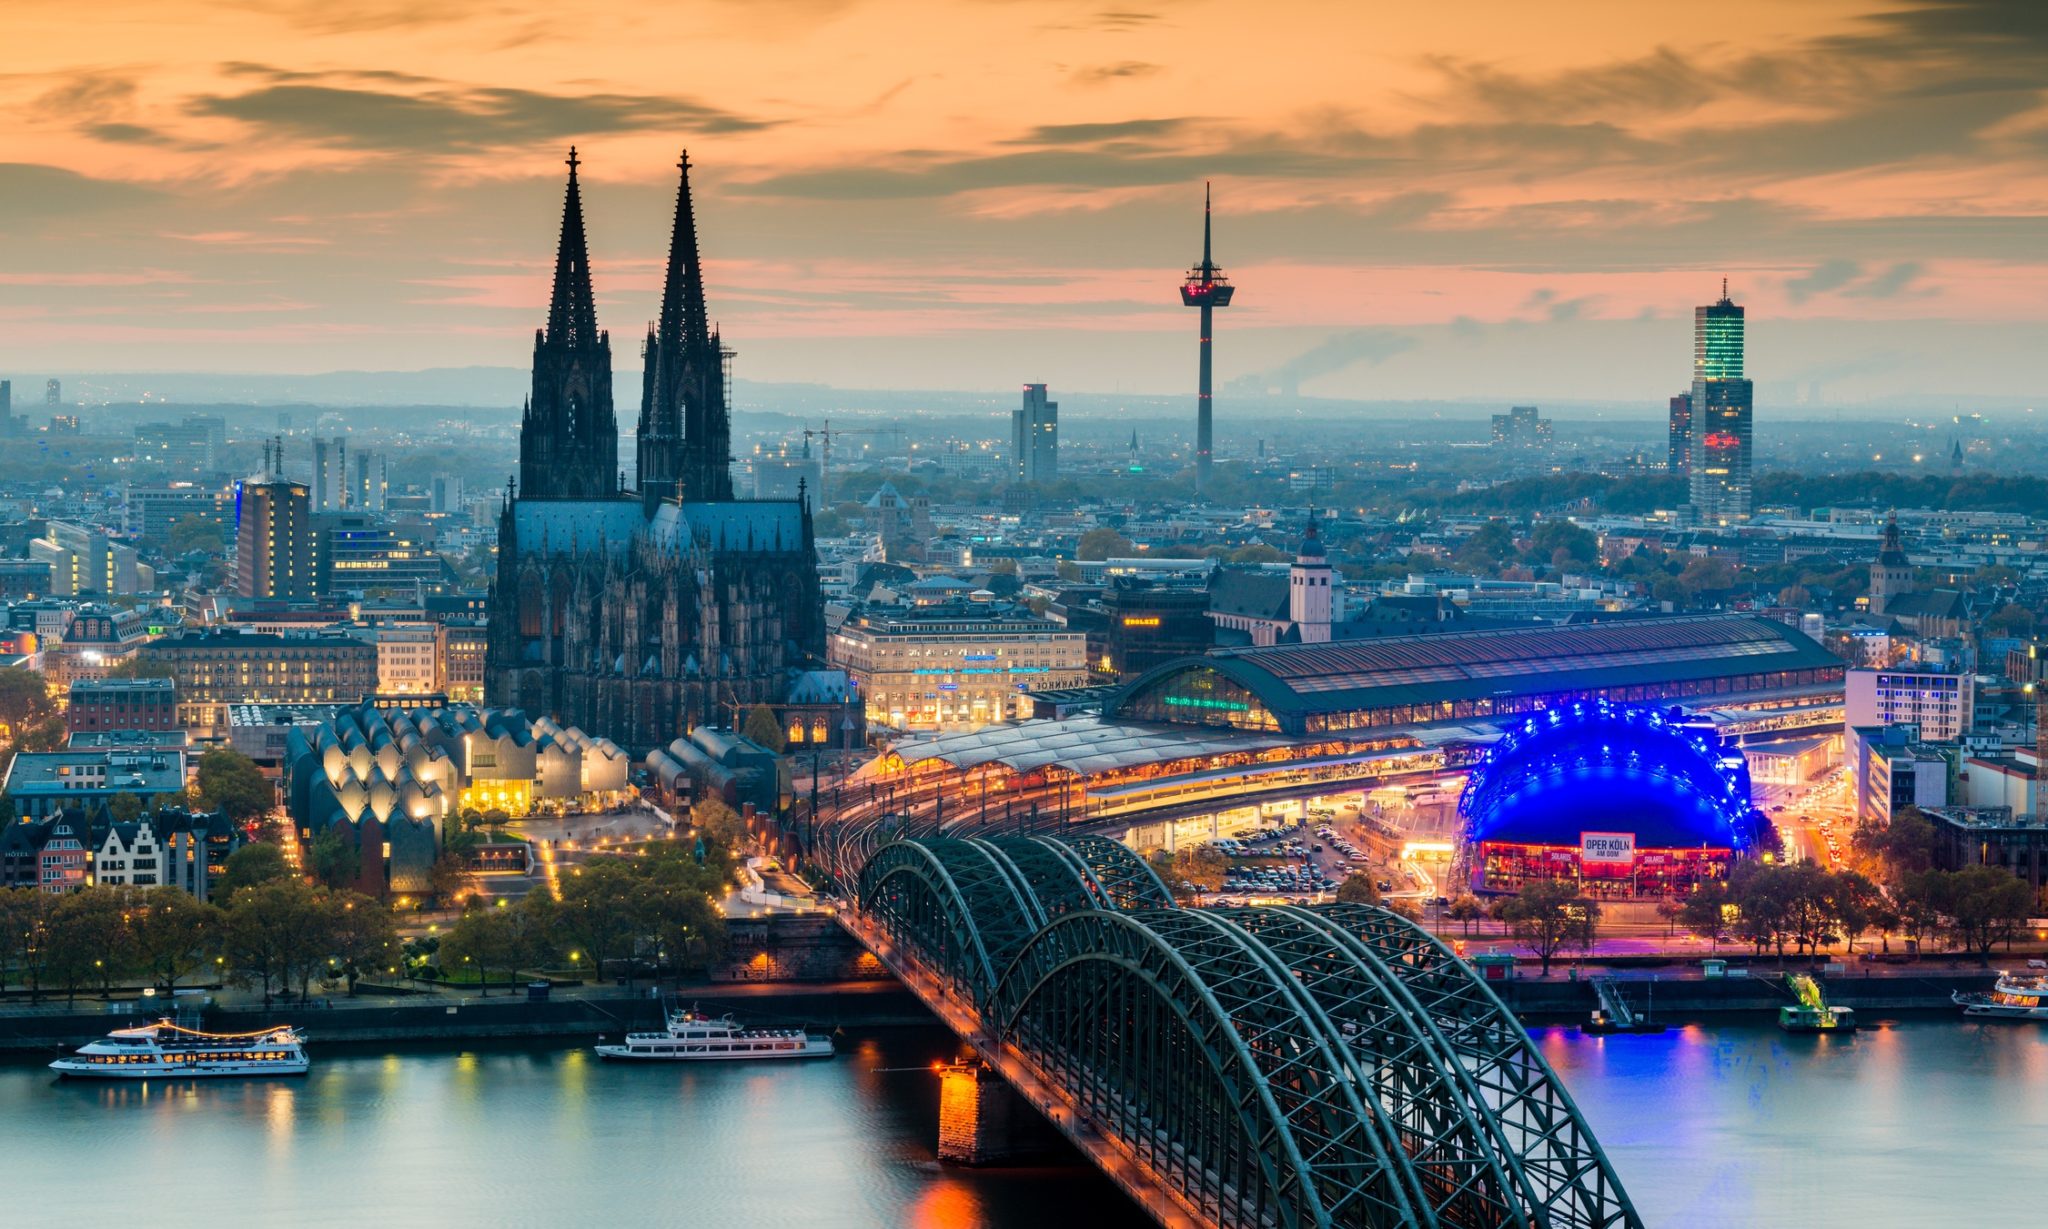 Haushaltsauflösung und Entrümpelung in Köln